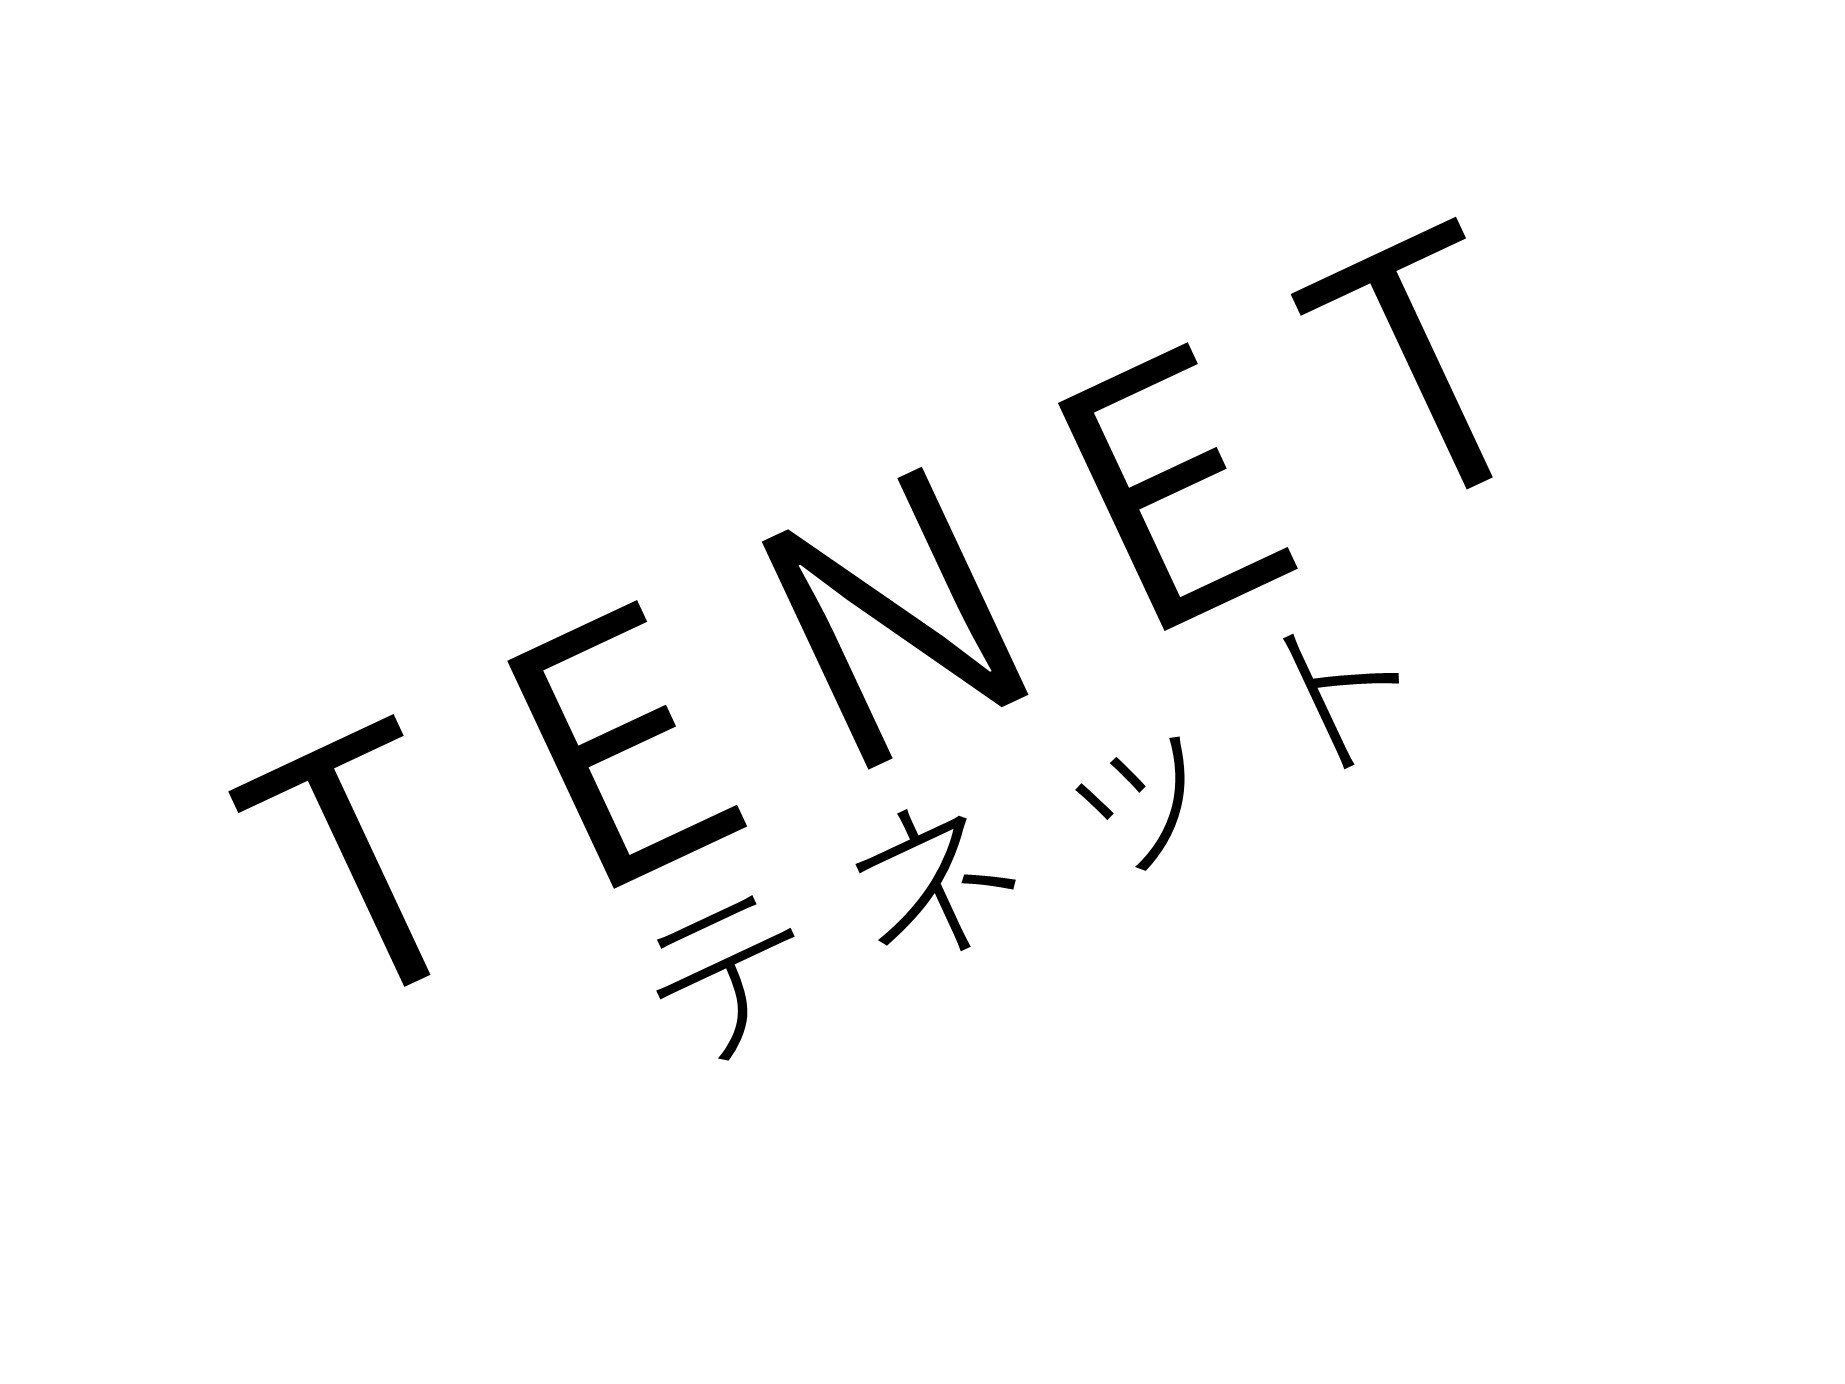 「TENET テネット」